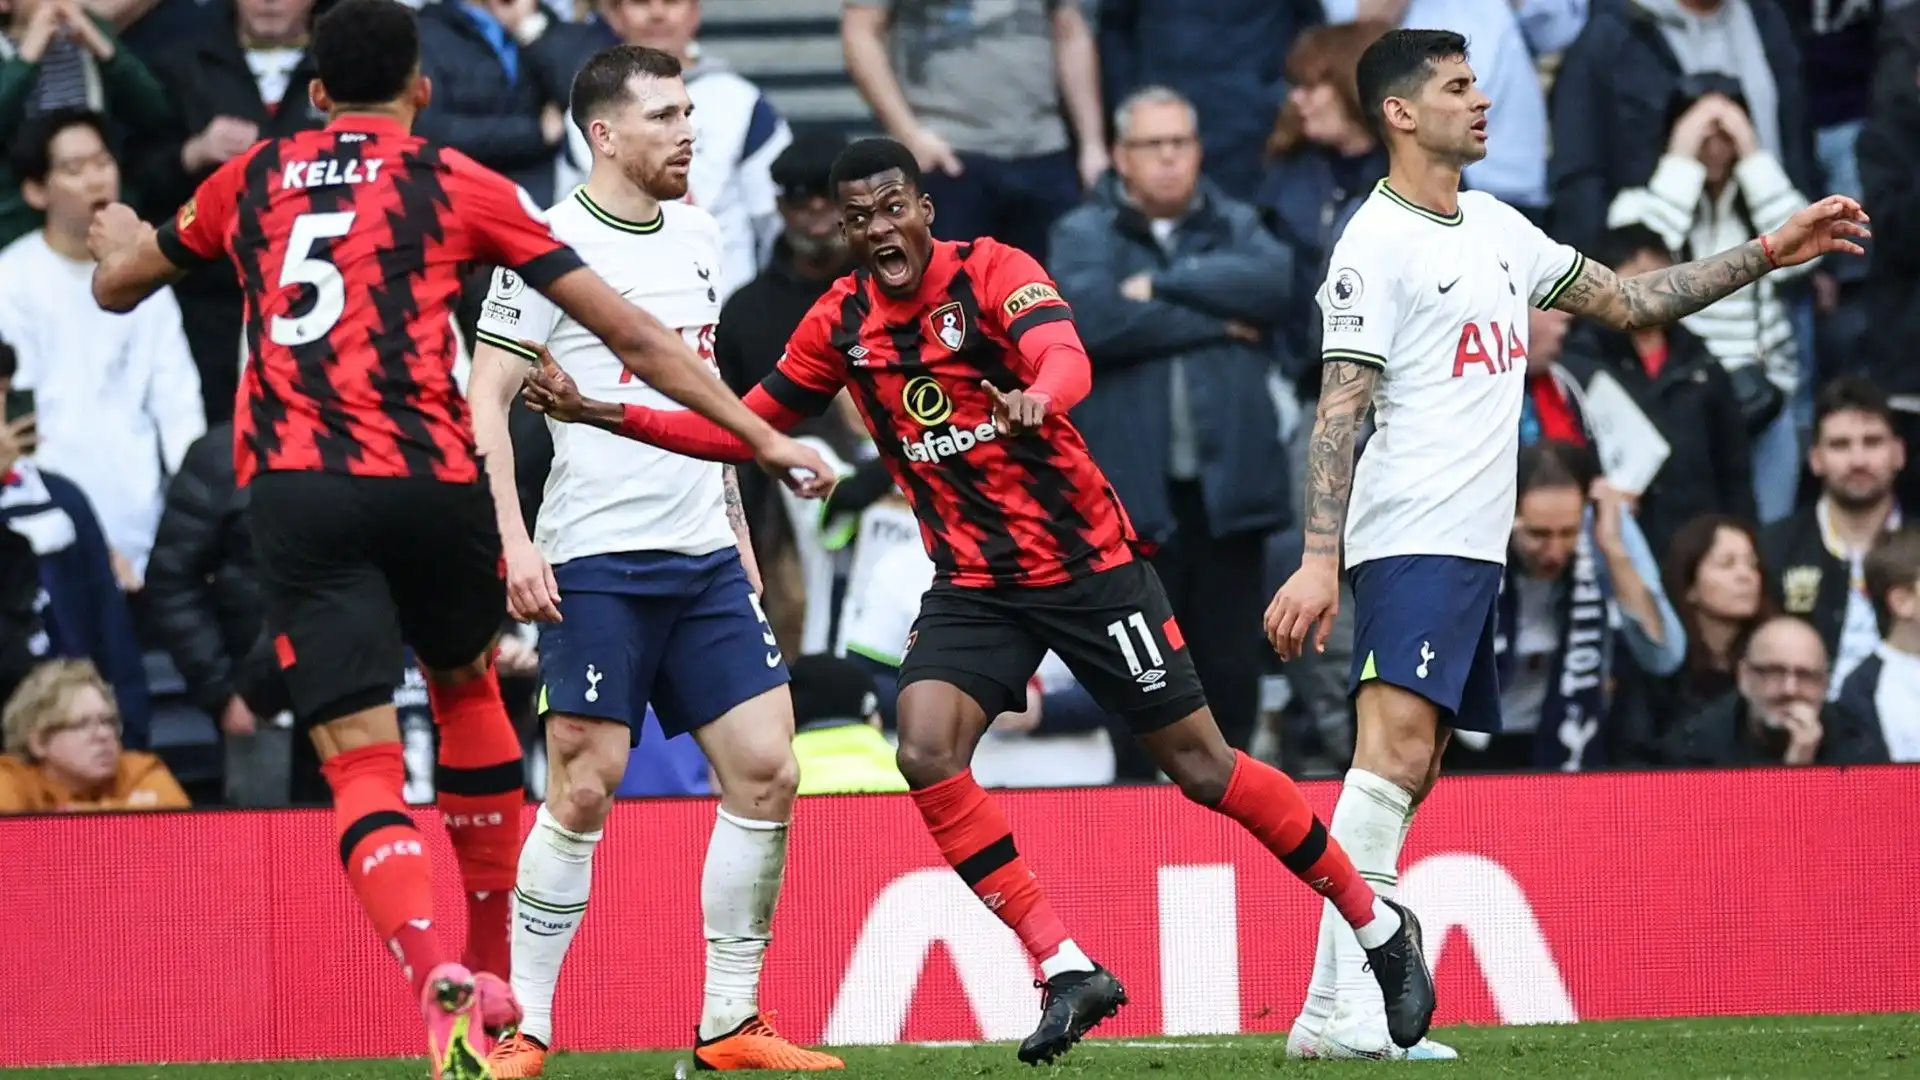 Il terzo gol del Bournemouth è stato segnato all'ultimo minuto di recupero, una vera beffa per il Tottenham